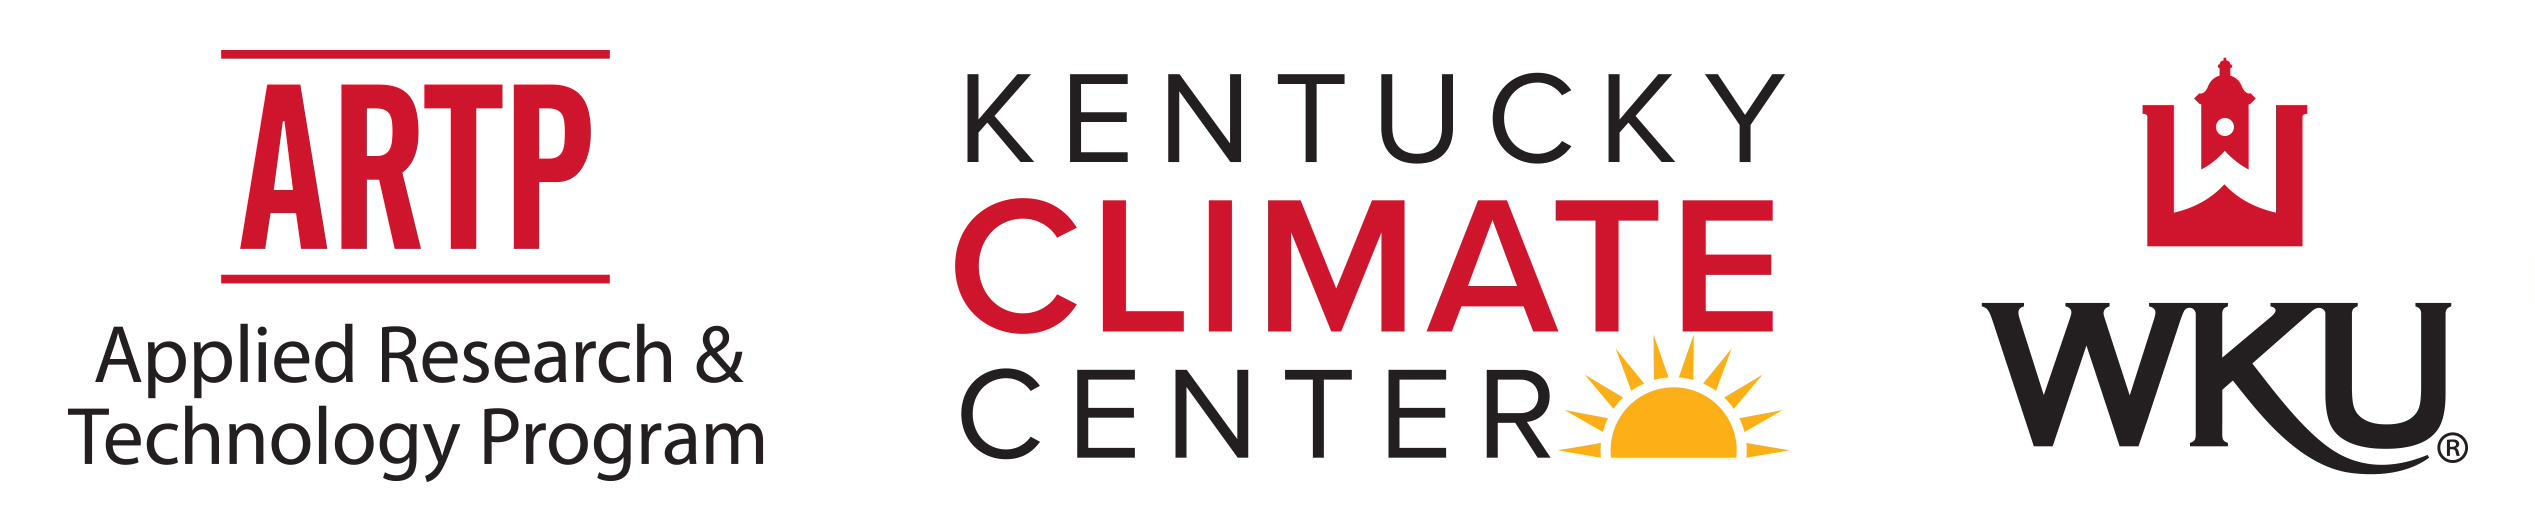 Kentucky Climate Center Logo